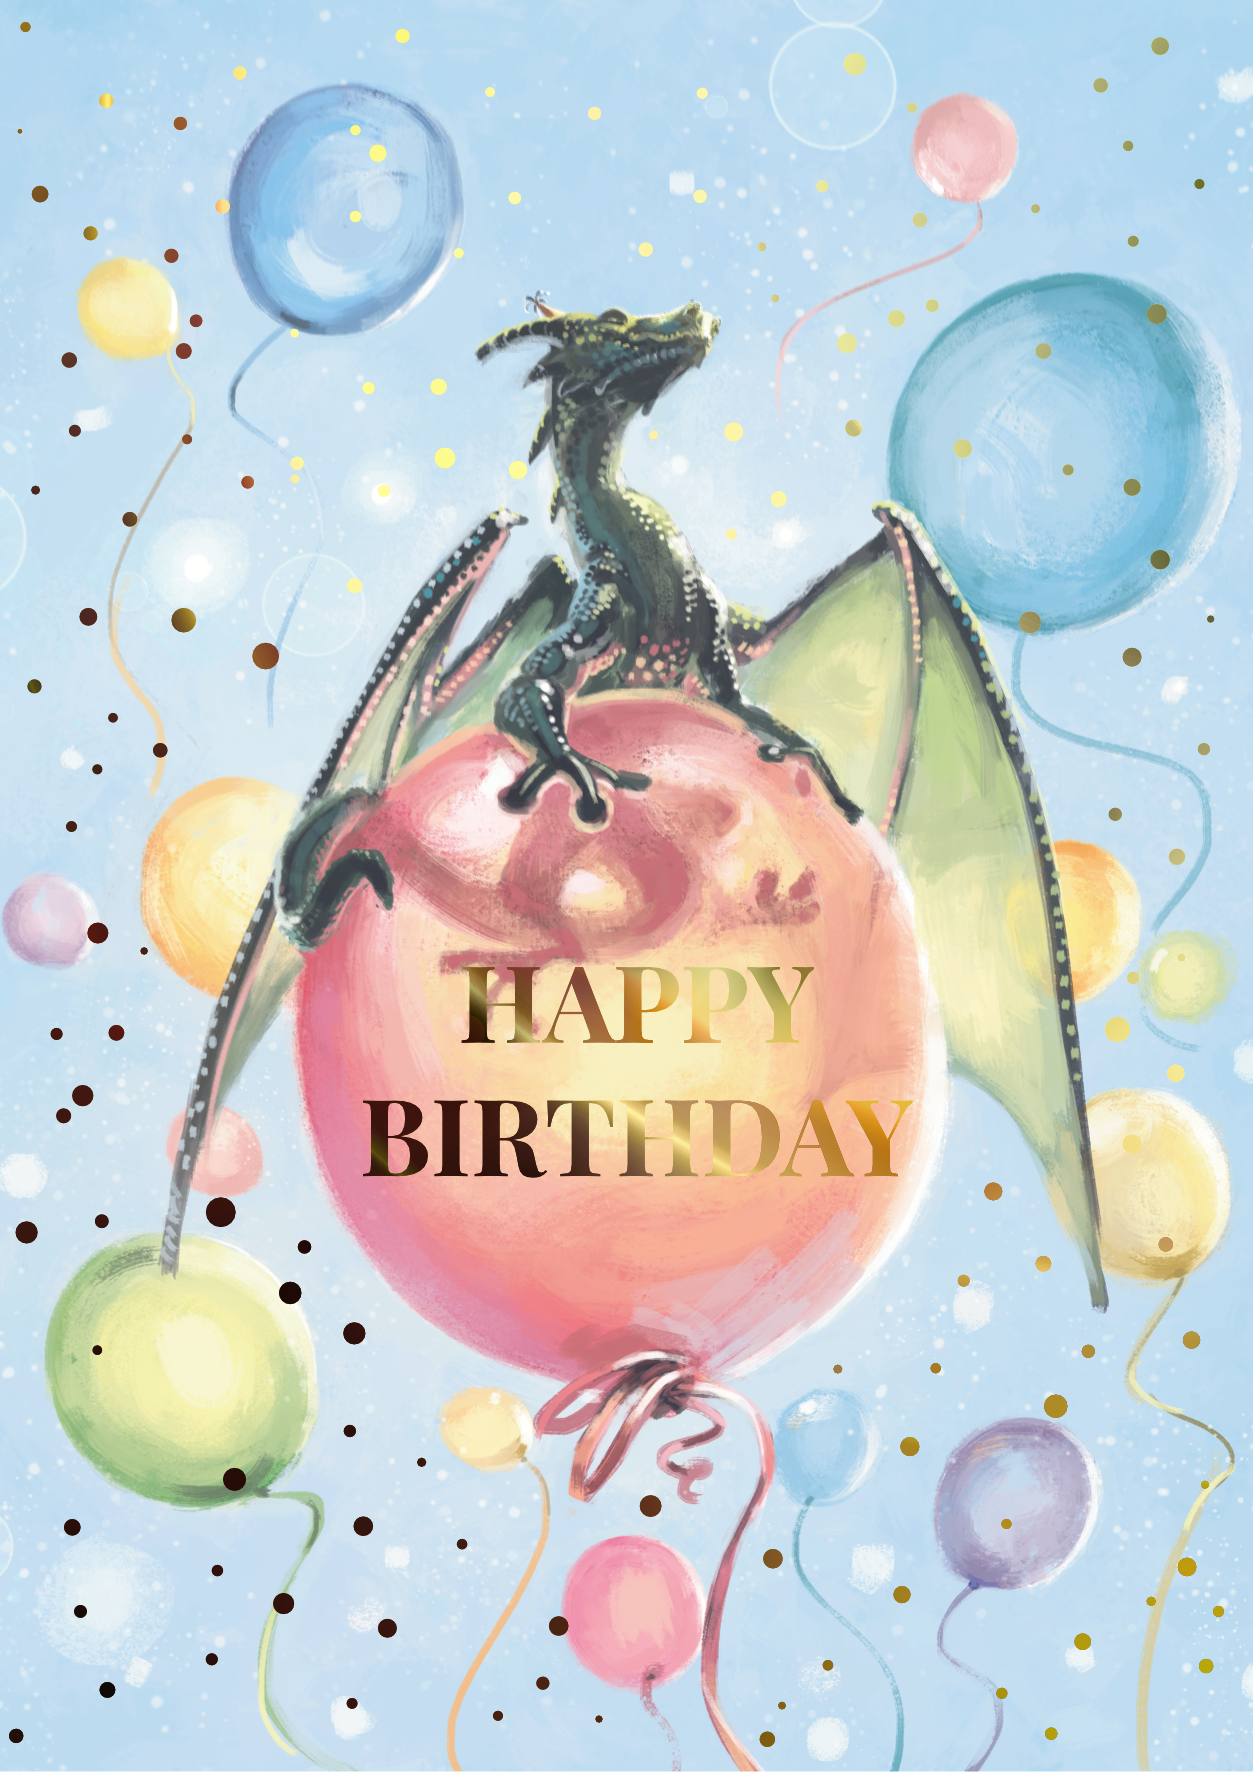 Balloon dragon (birthday card)